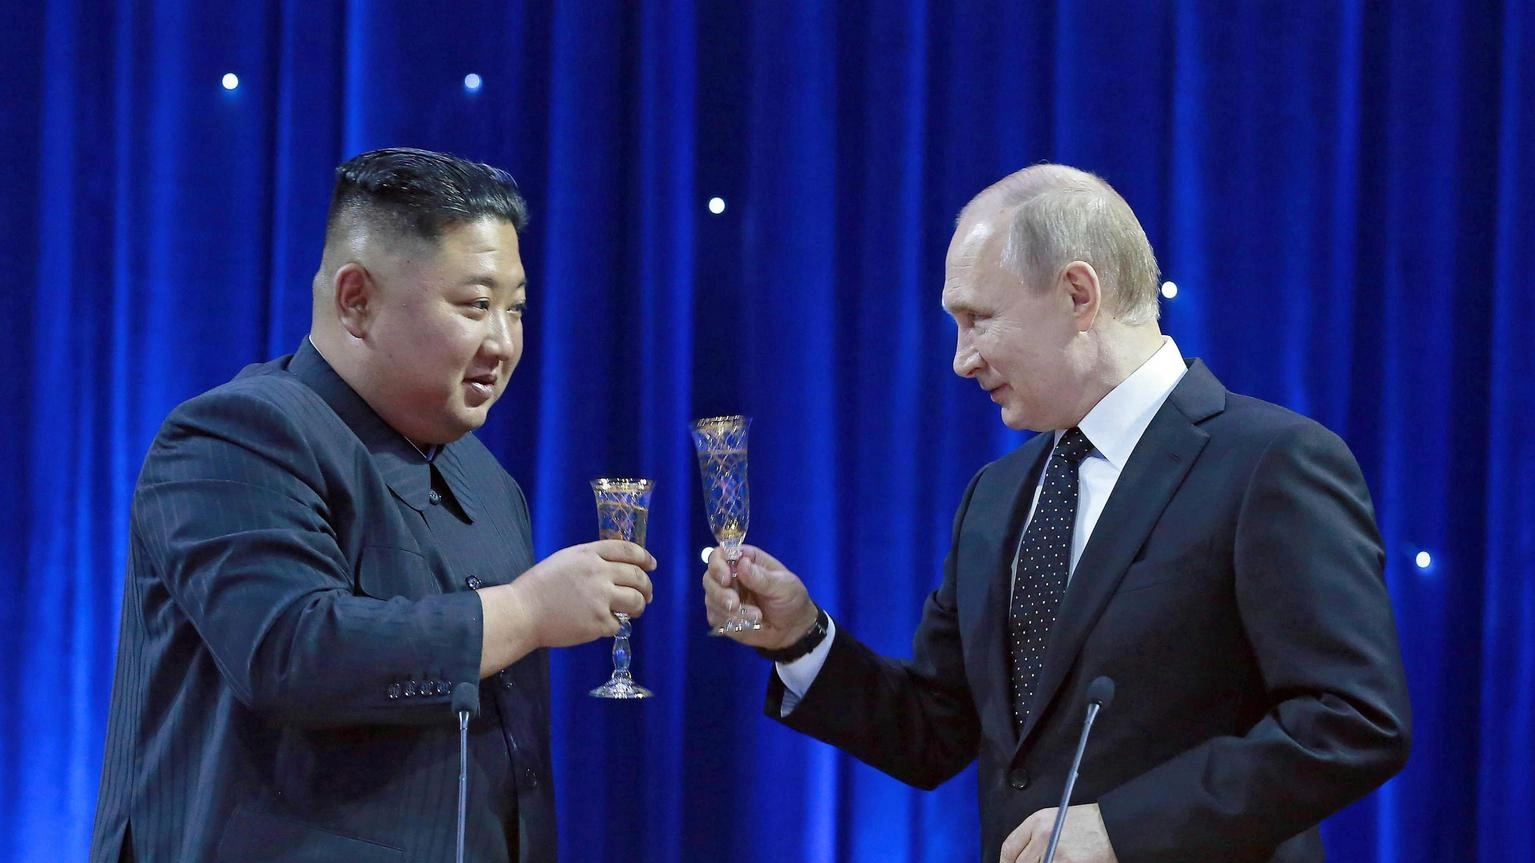 Kim incontra Putin in Russia, l'incontro è imminente.